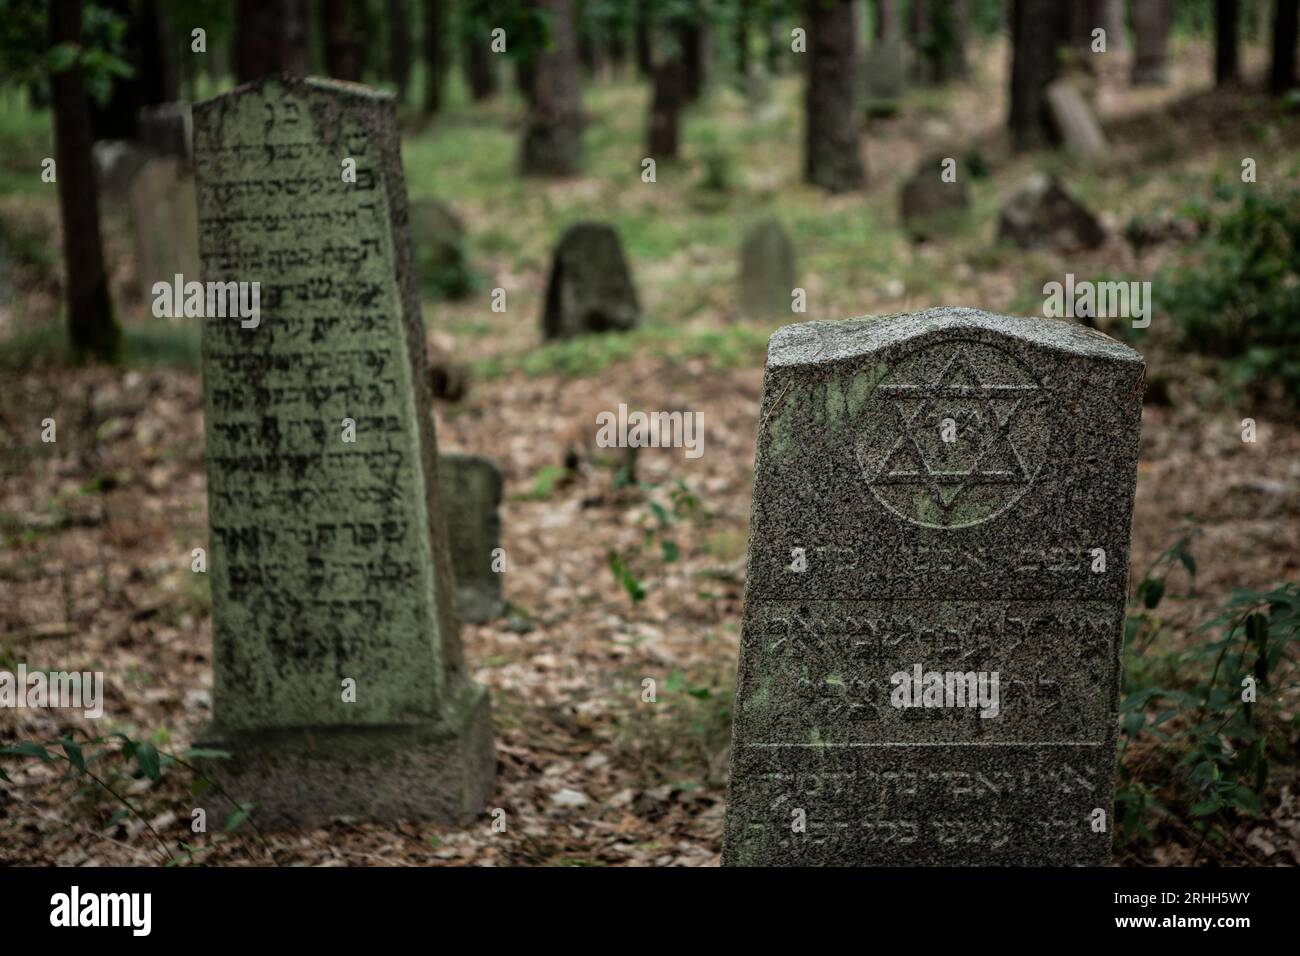 In Merkinė, einer kleinen Stadt in Litauen, gibt es einen alten jüdischen Friedhof, der tief im Wald versteckt liegt. Dieser Friedhof dient als stille Banque D'Images